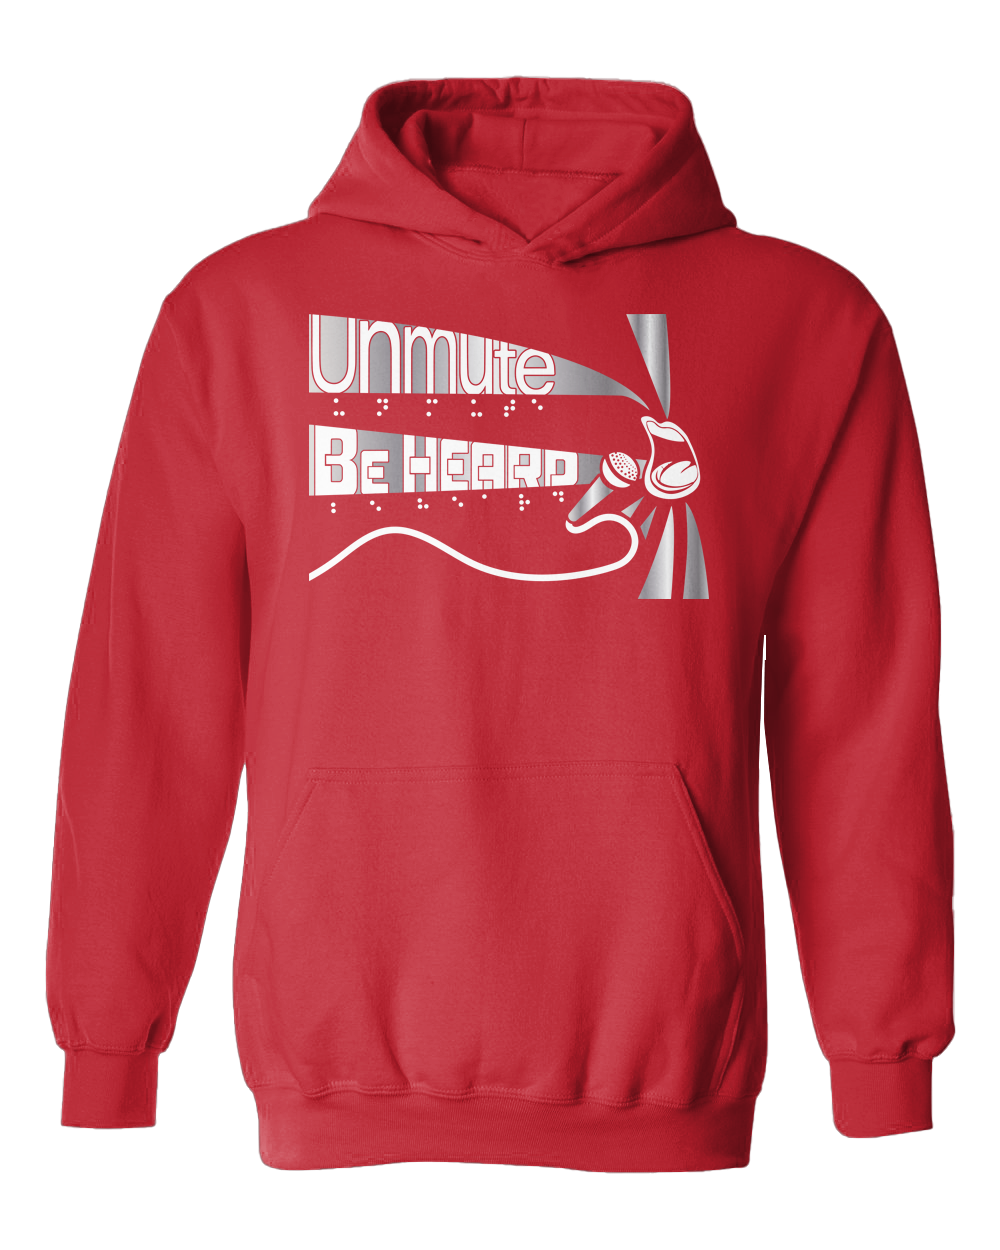 Unmute/ Be heard hoodie Red